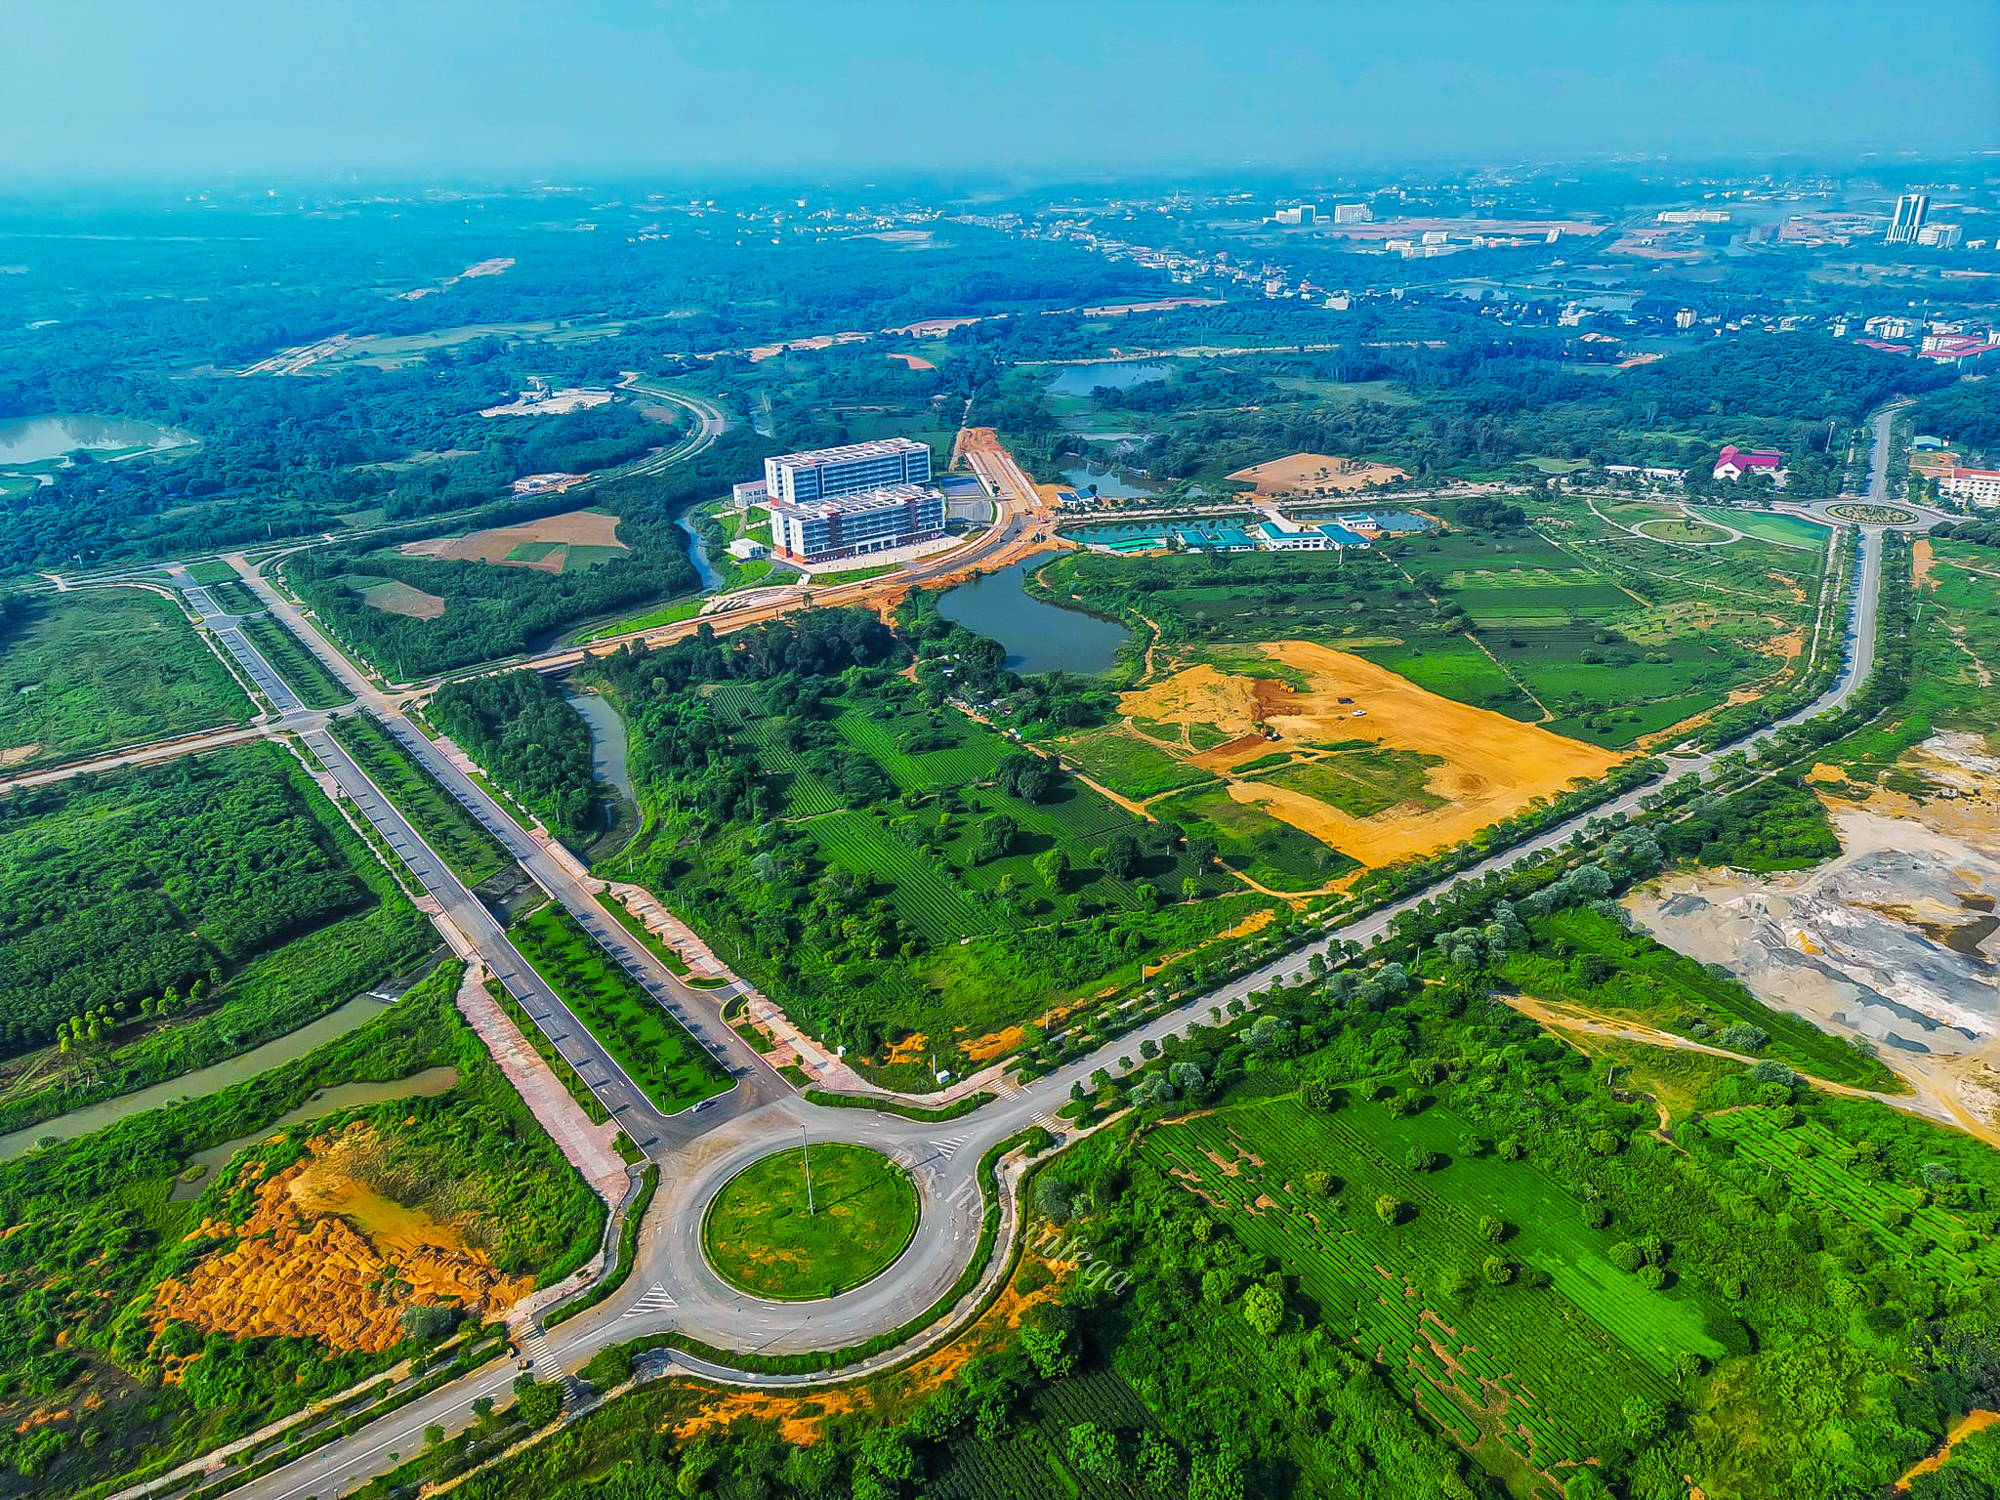 Đại học rộng nhất Việt Nam, diện tích gấp đôi quận Hoàn Kiếm  - Ảnh 3.